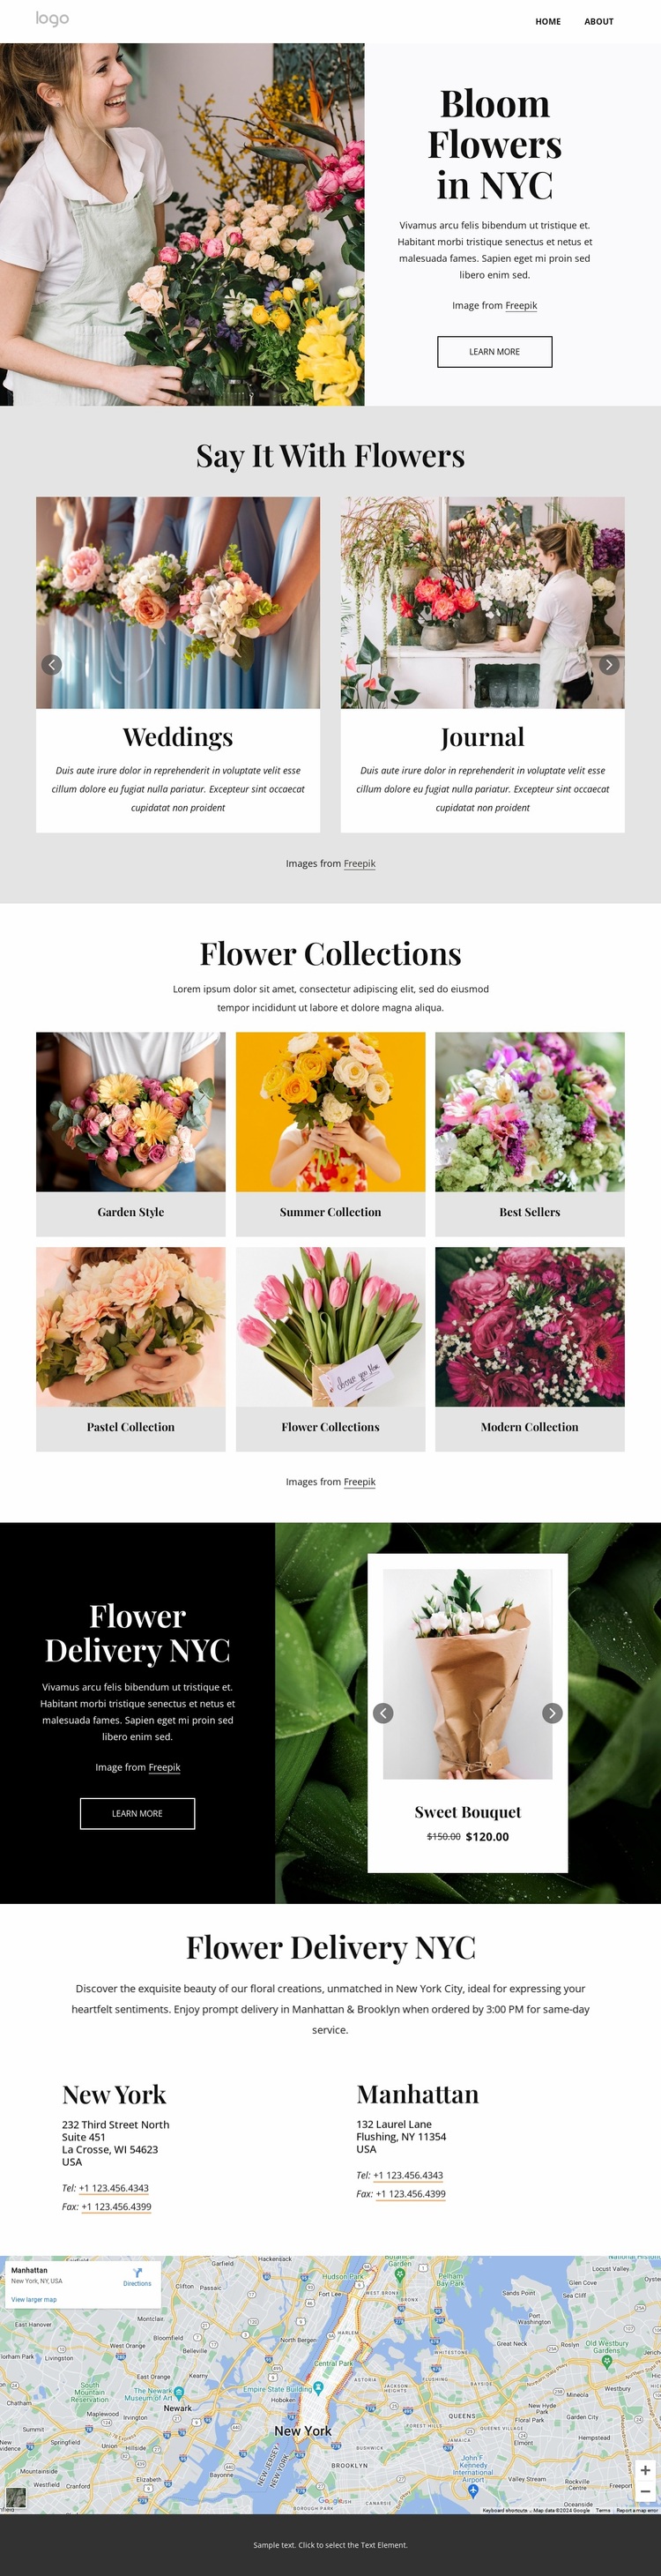 Bloom flowers in NYC Website Design